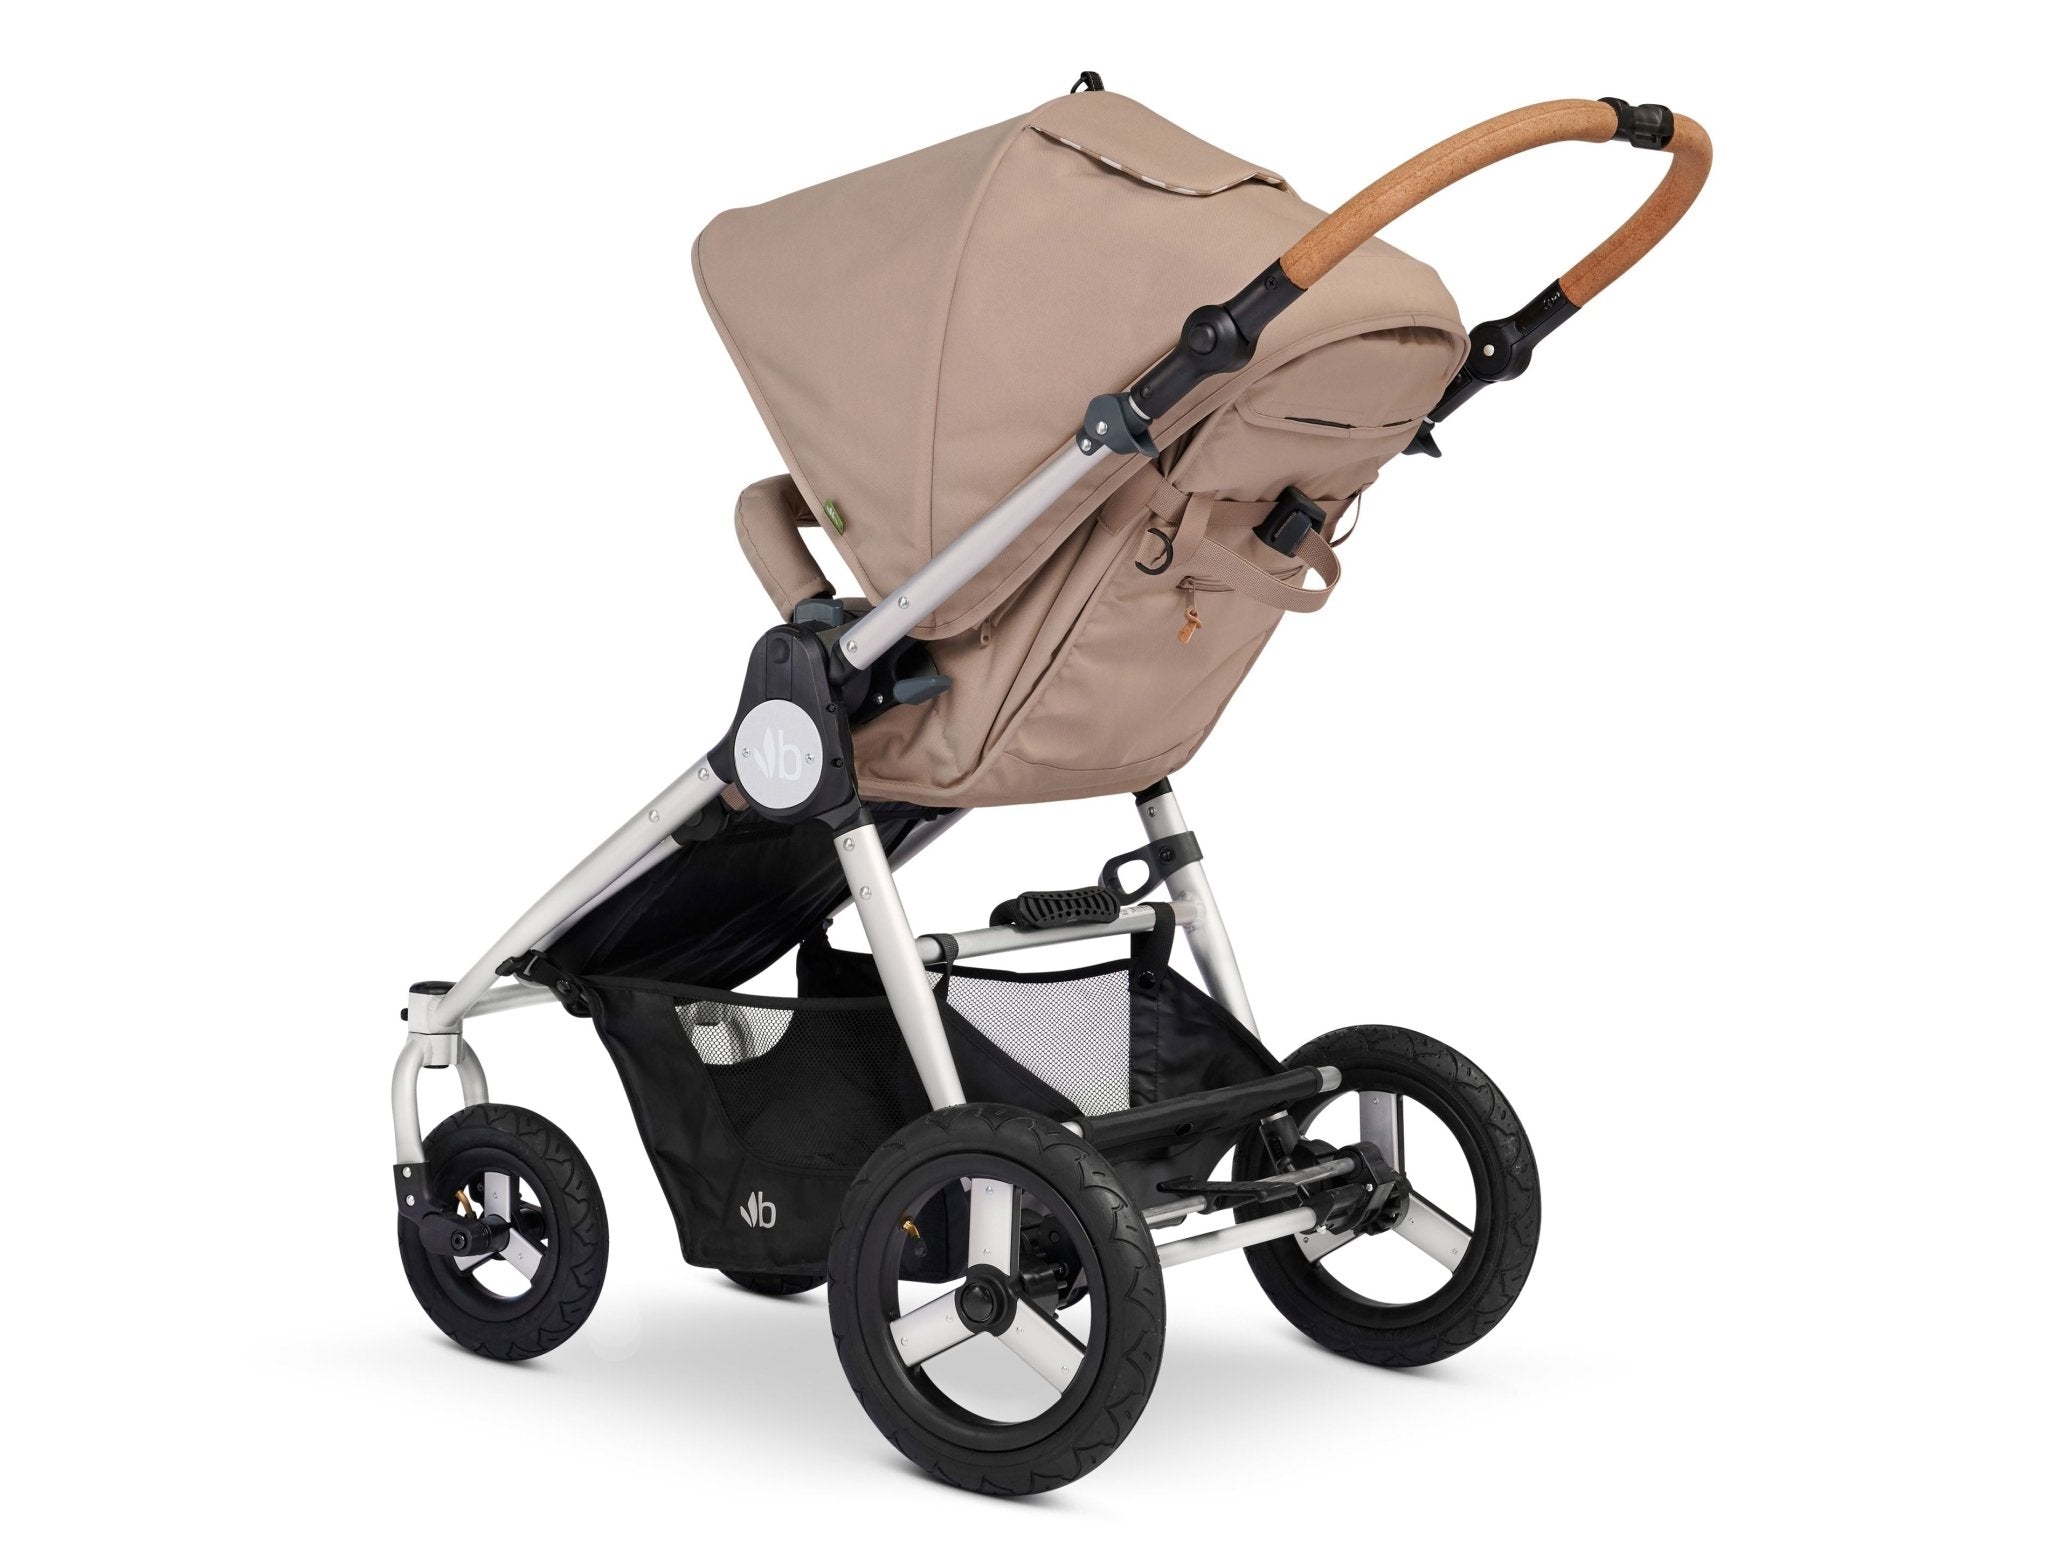 Bumbleride 2022 Indie Stroller - ANB Baby -850038887148$500 - $1000